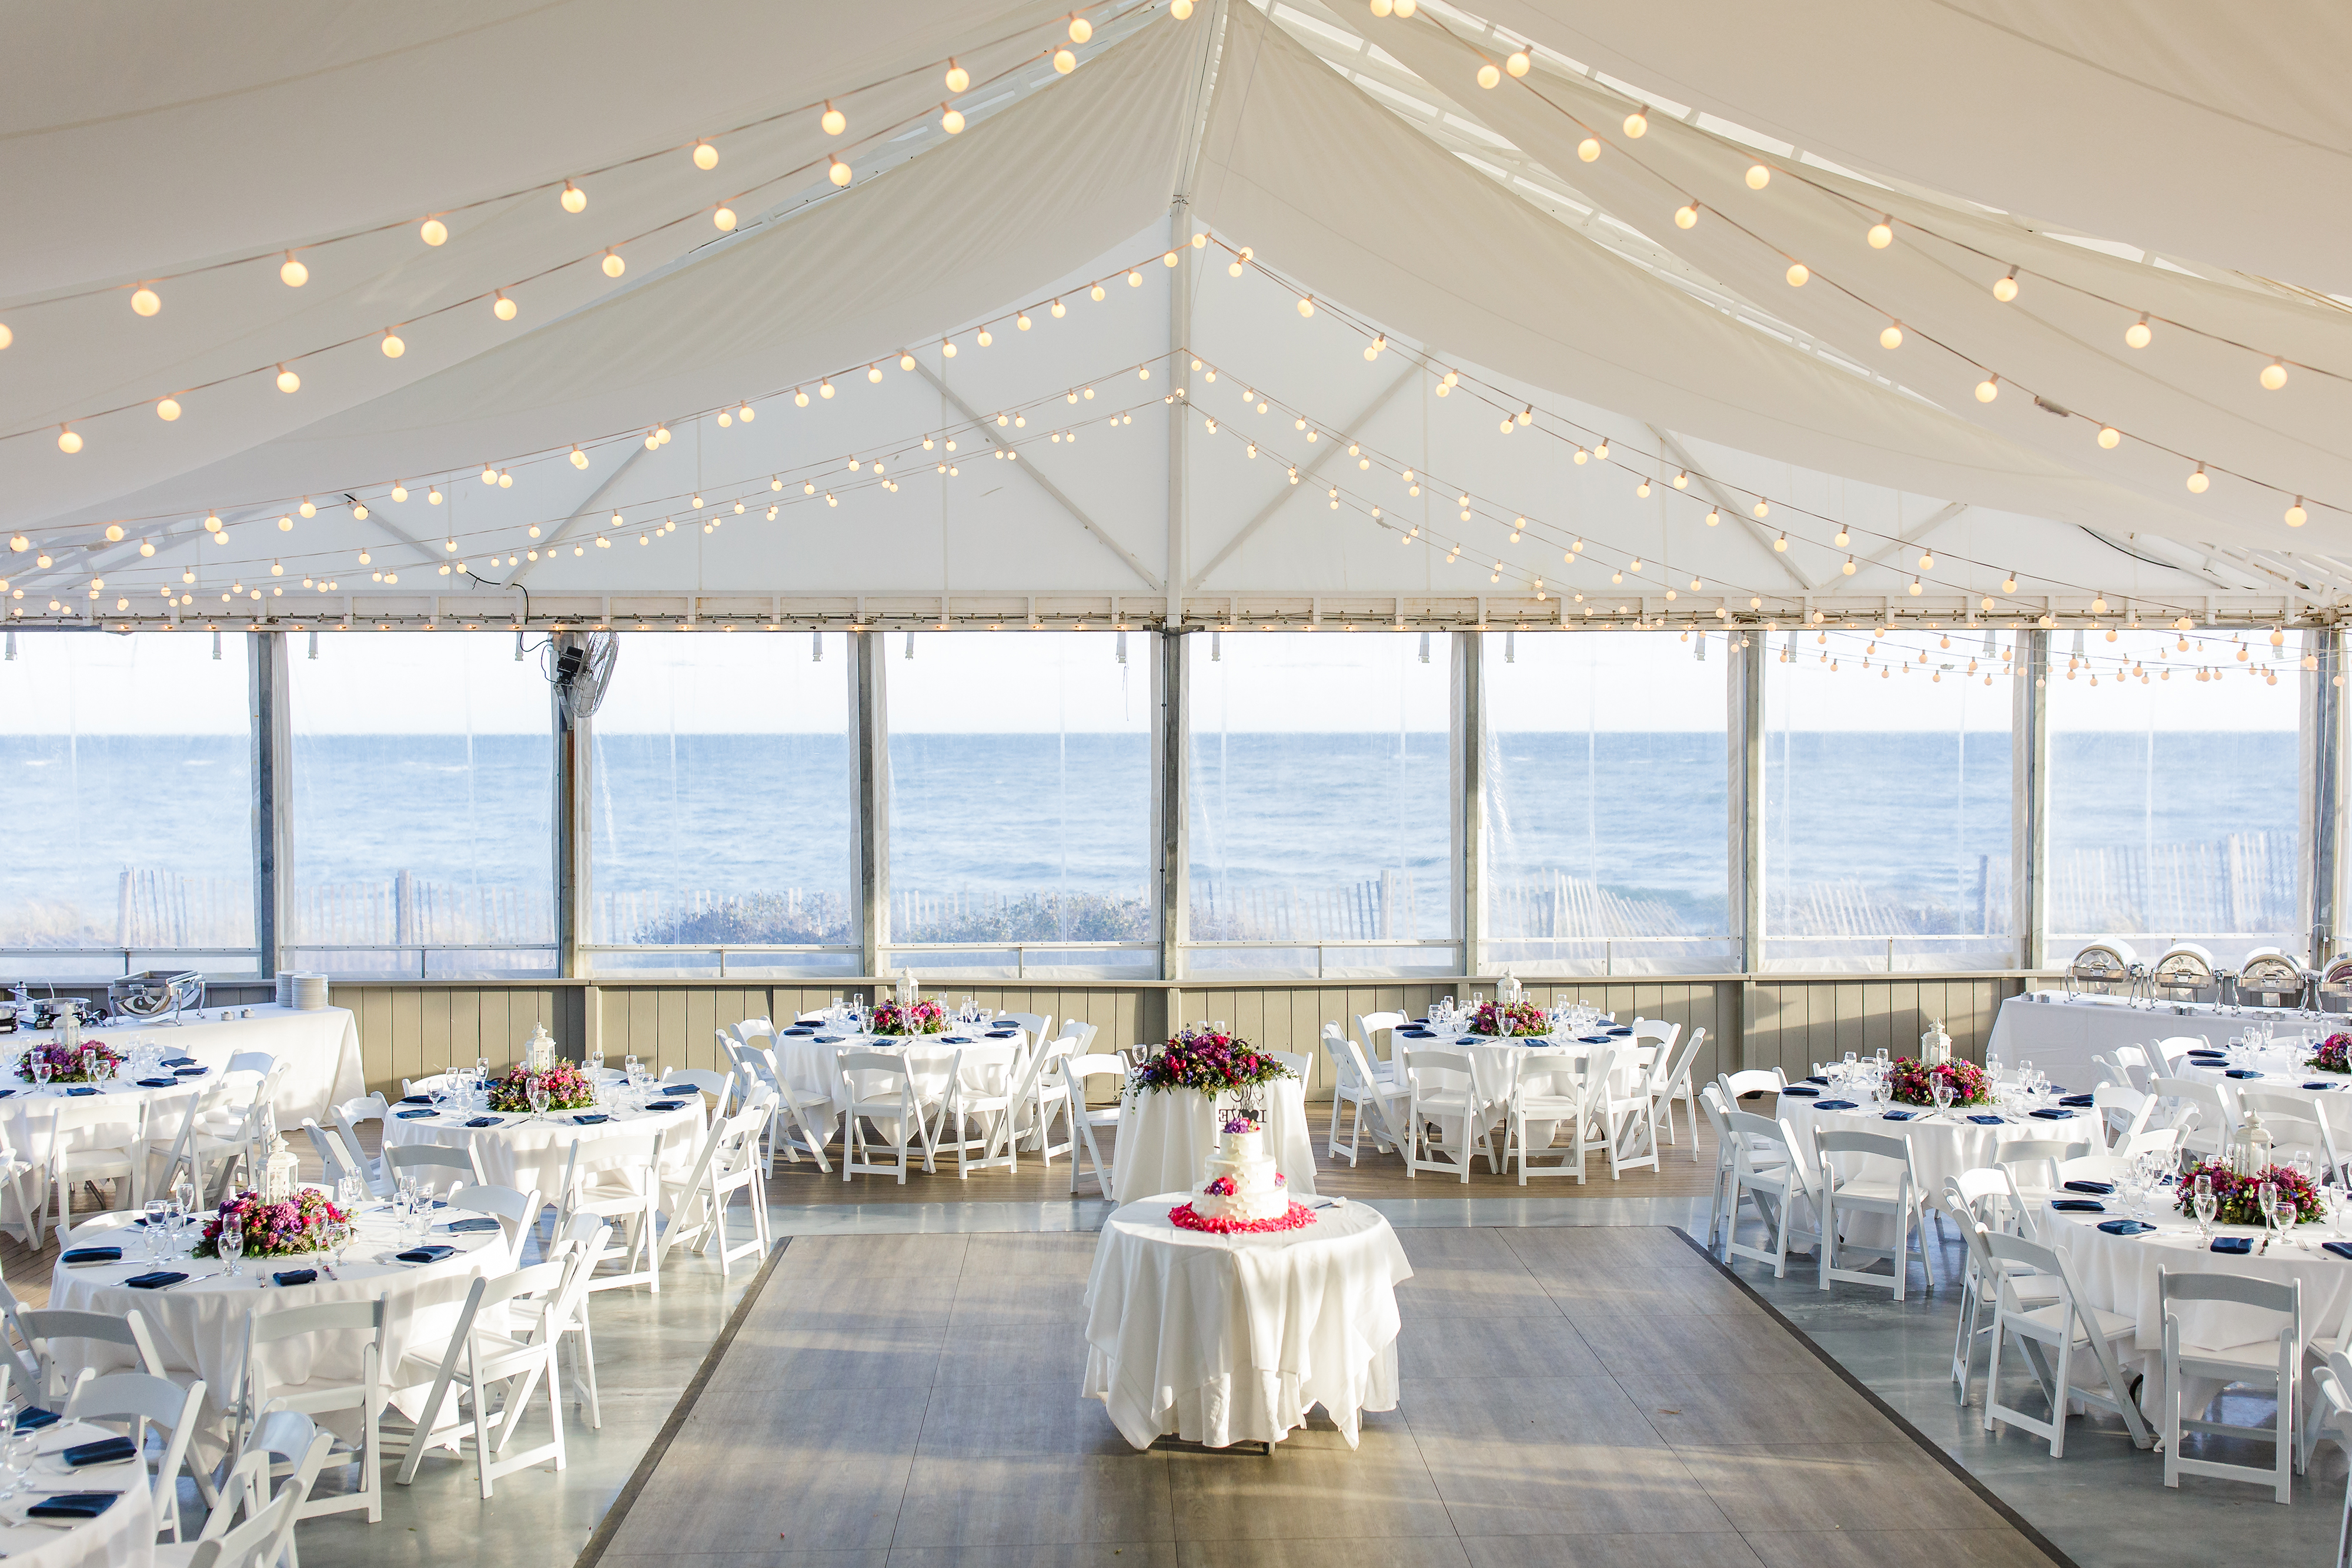 A wedding hall on Cape Cod beach